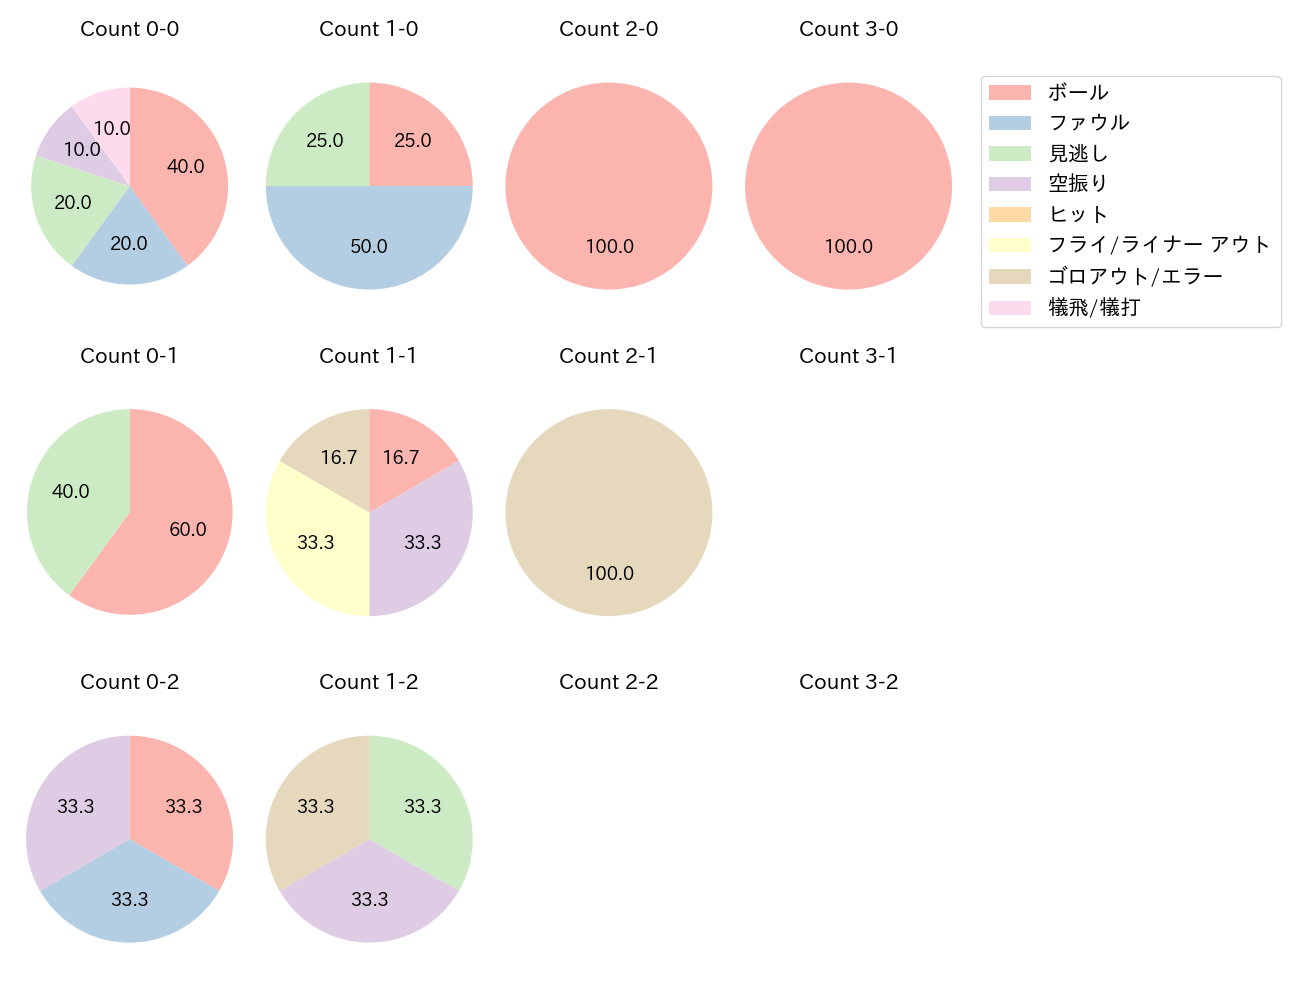 髙松 渡の球数分布(2021年5月)